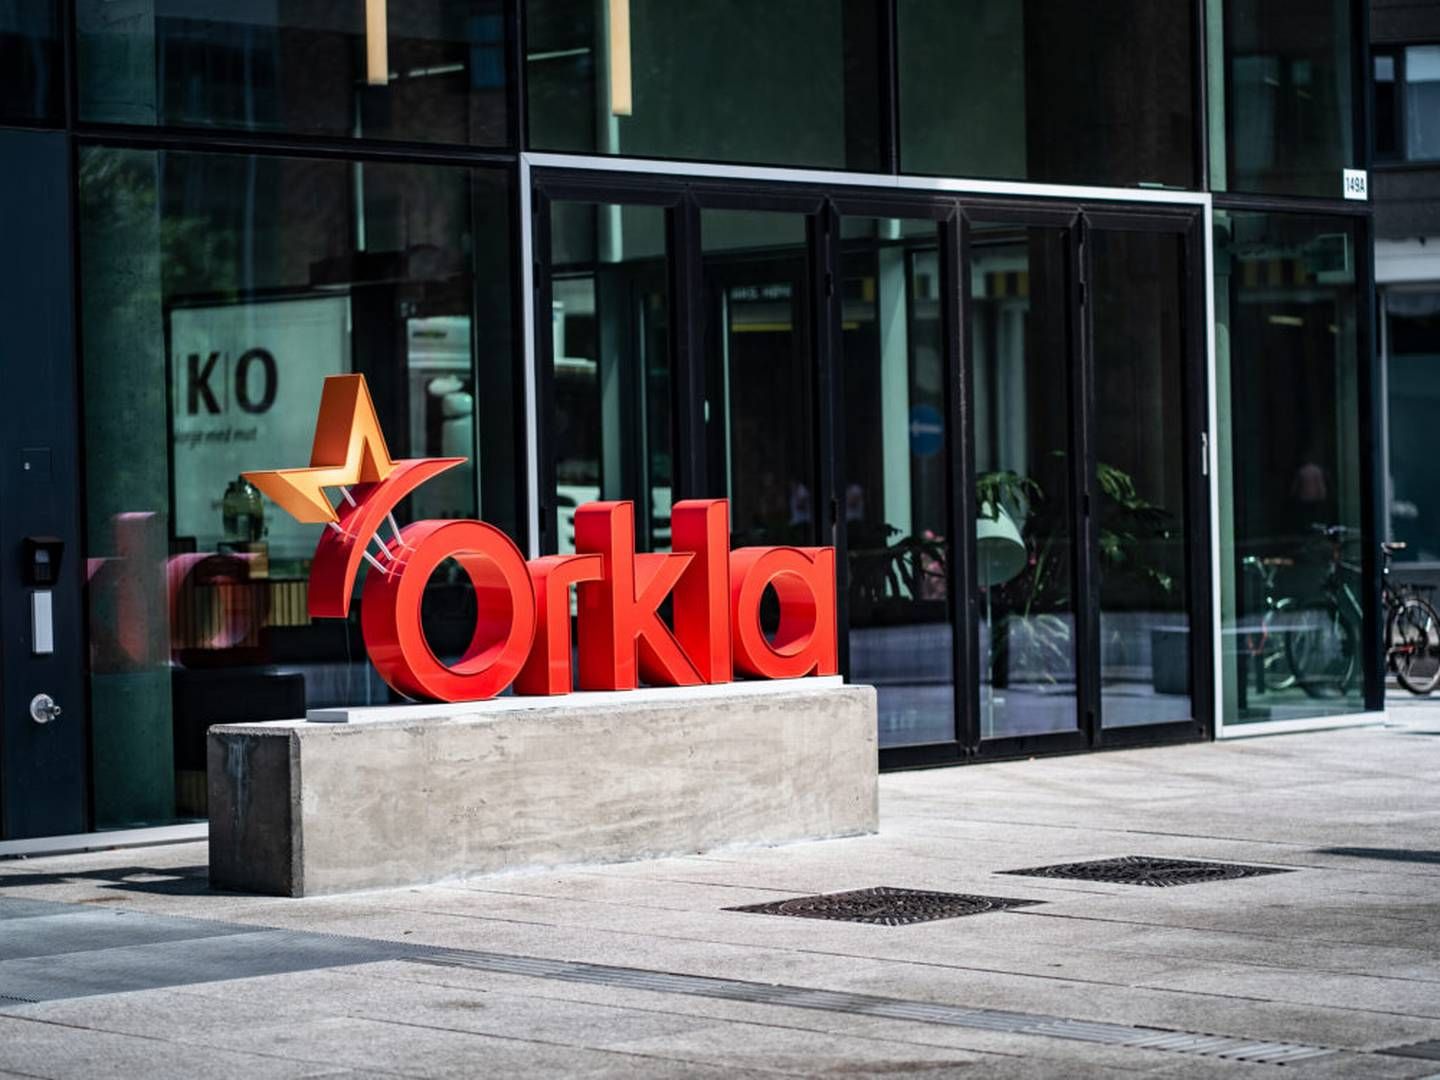 Konfektureafdelingen Orkla Confectionery & Snacks investerer 12,7 mio. kr. i svensk slikfabrik og har planer om at nå et mere internationalt marked. | Foto: PR/Orkla Foods